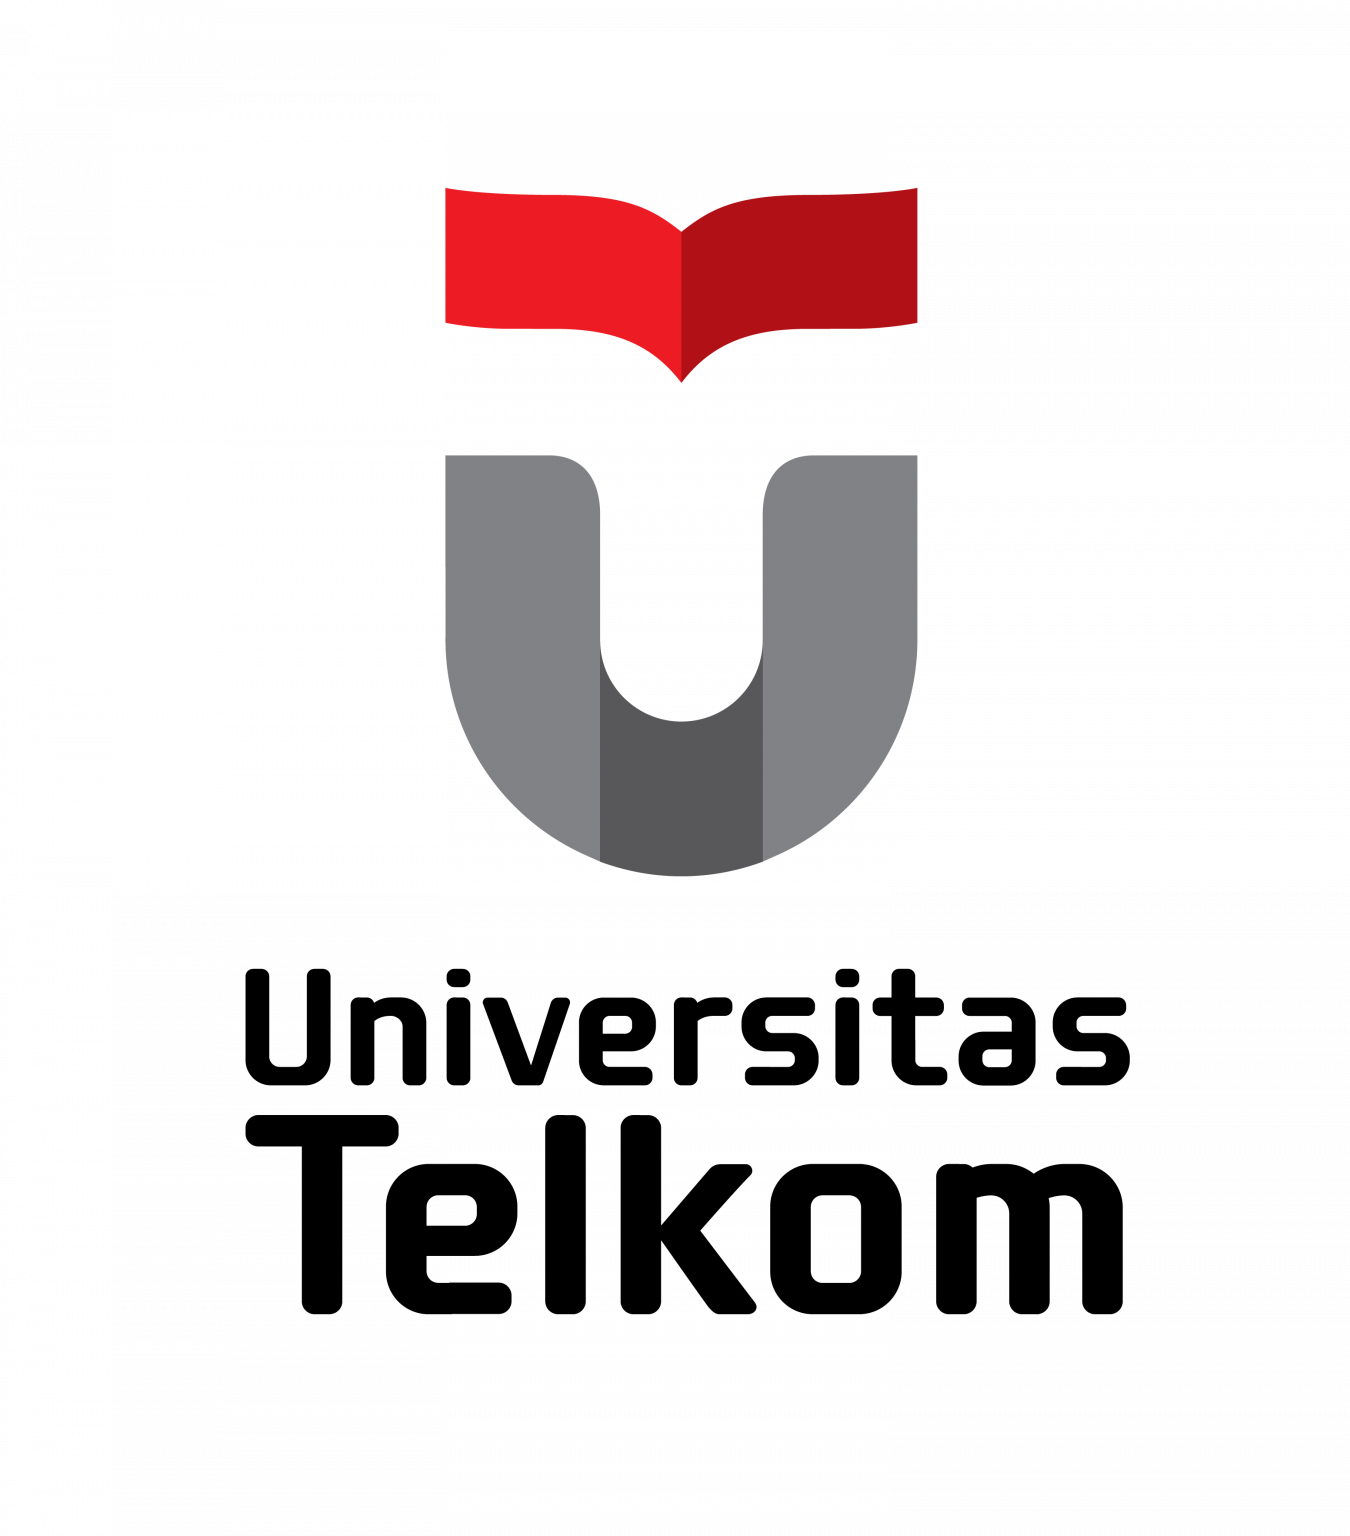 Telkom University: Sejarah, Profil dan Program Studi - Anak Telkom